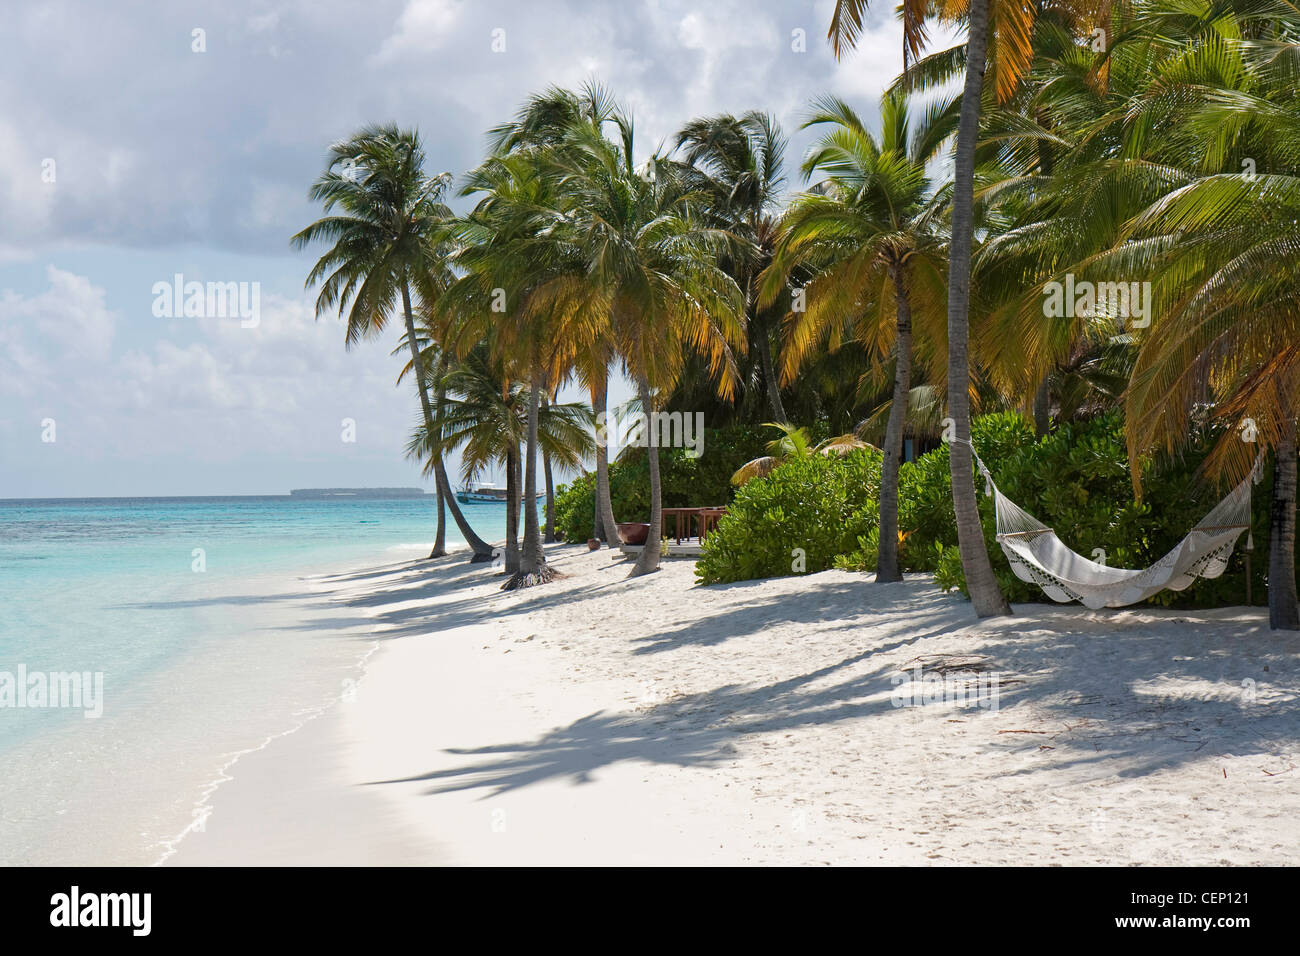 Palm Tree and a Hammock, Ari Atoll, Mirihi, Maldives Stock Photo